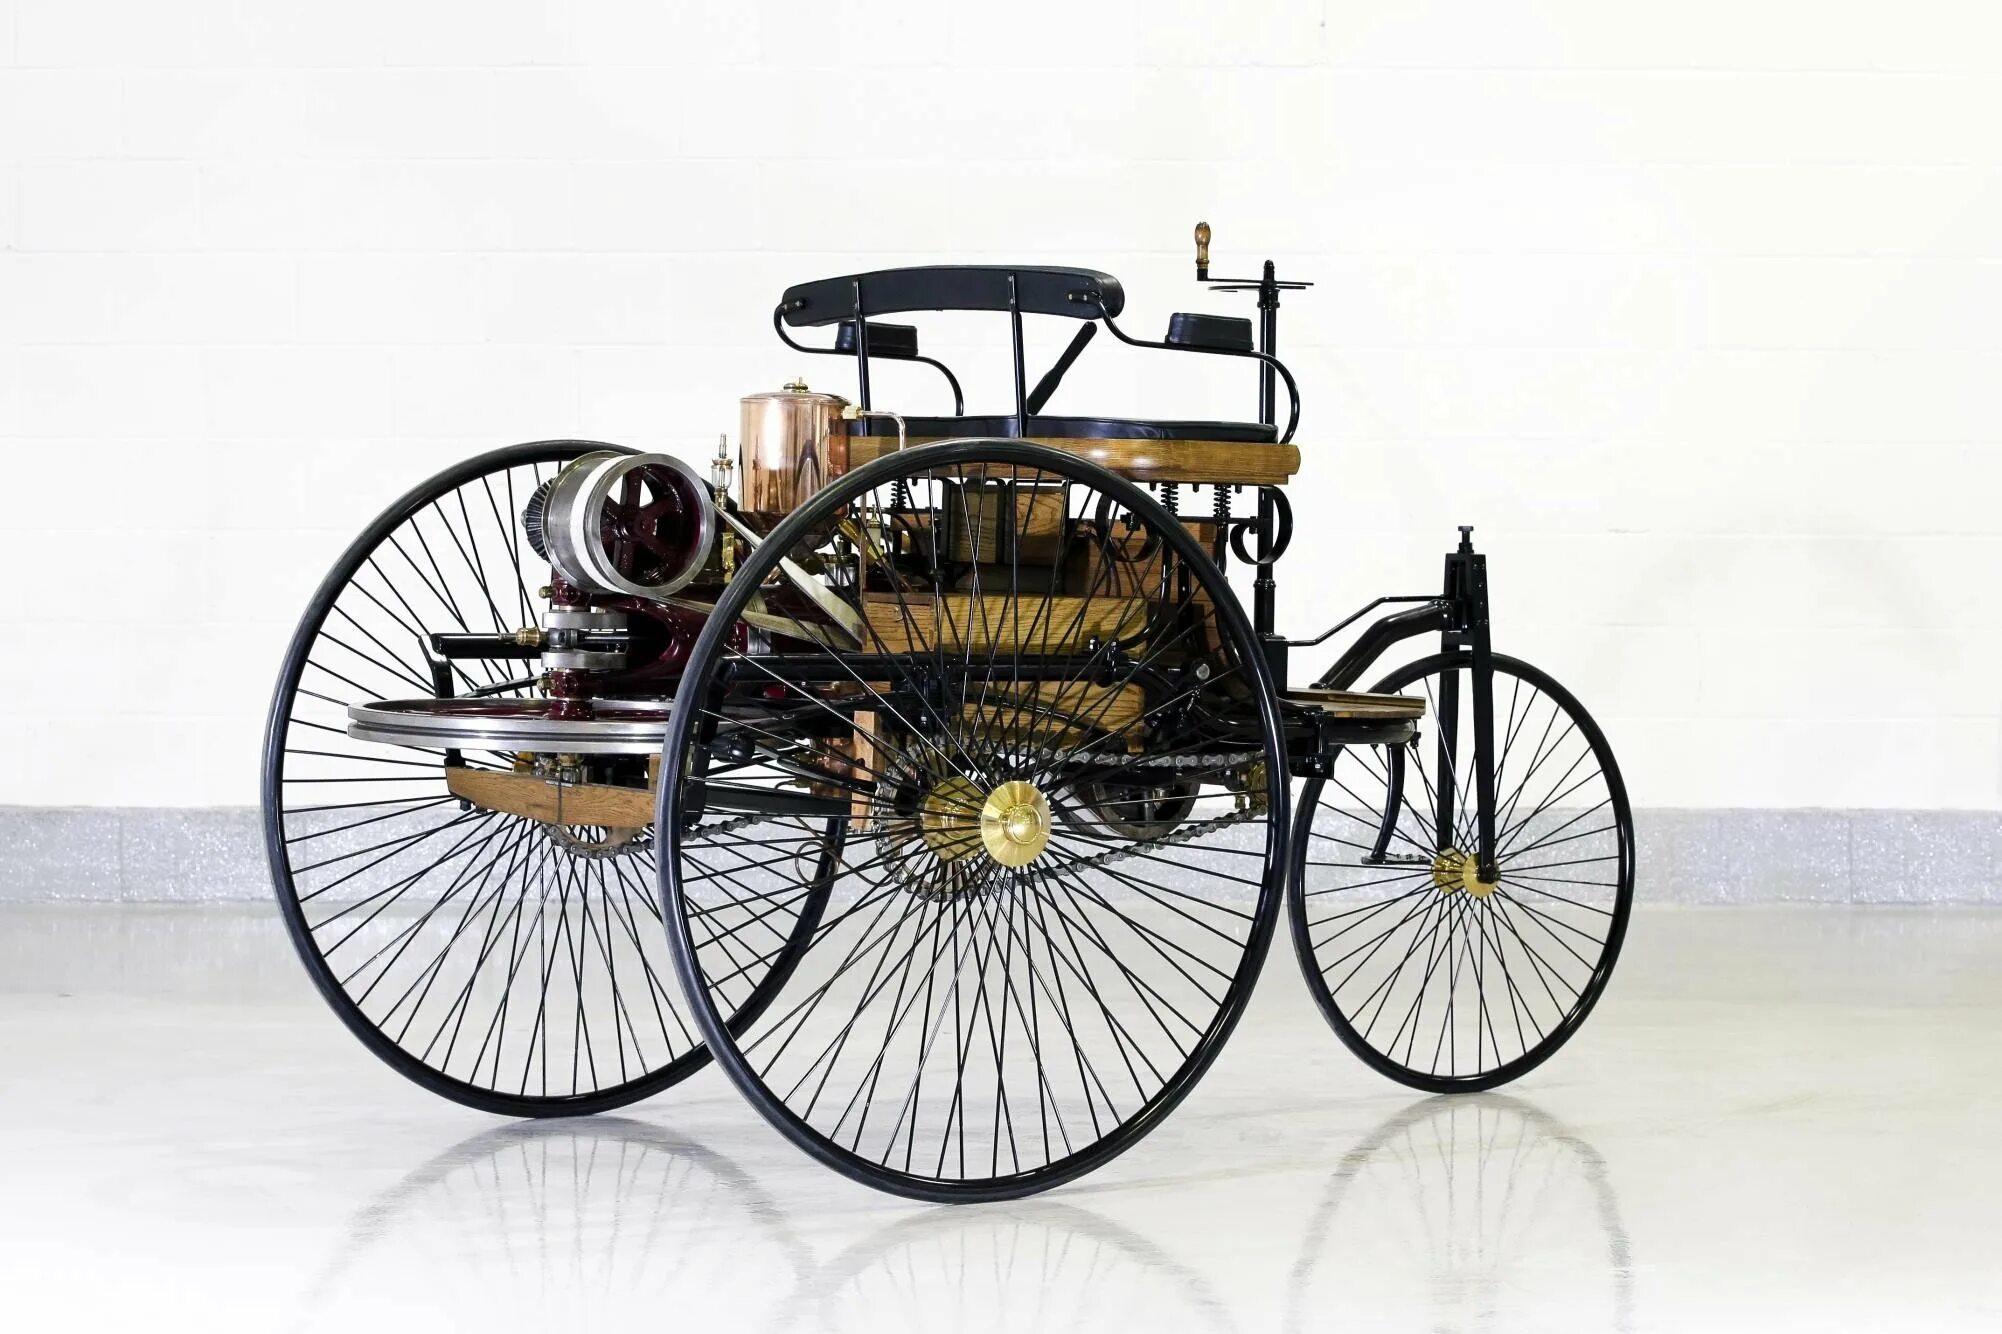 Первый автомобиль внутреннего сгорания. Benz Patent-Motorwagen 1886. Benz Patent-Motorwagen 1886 двигатель.